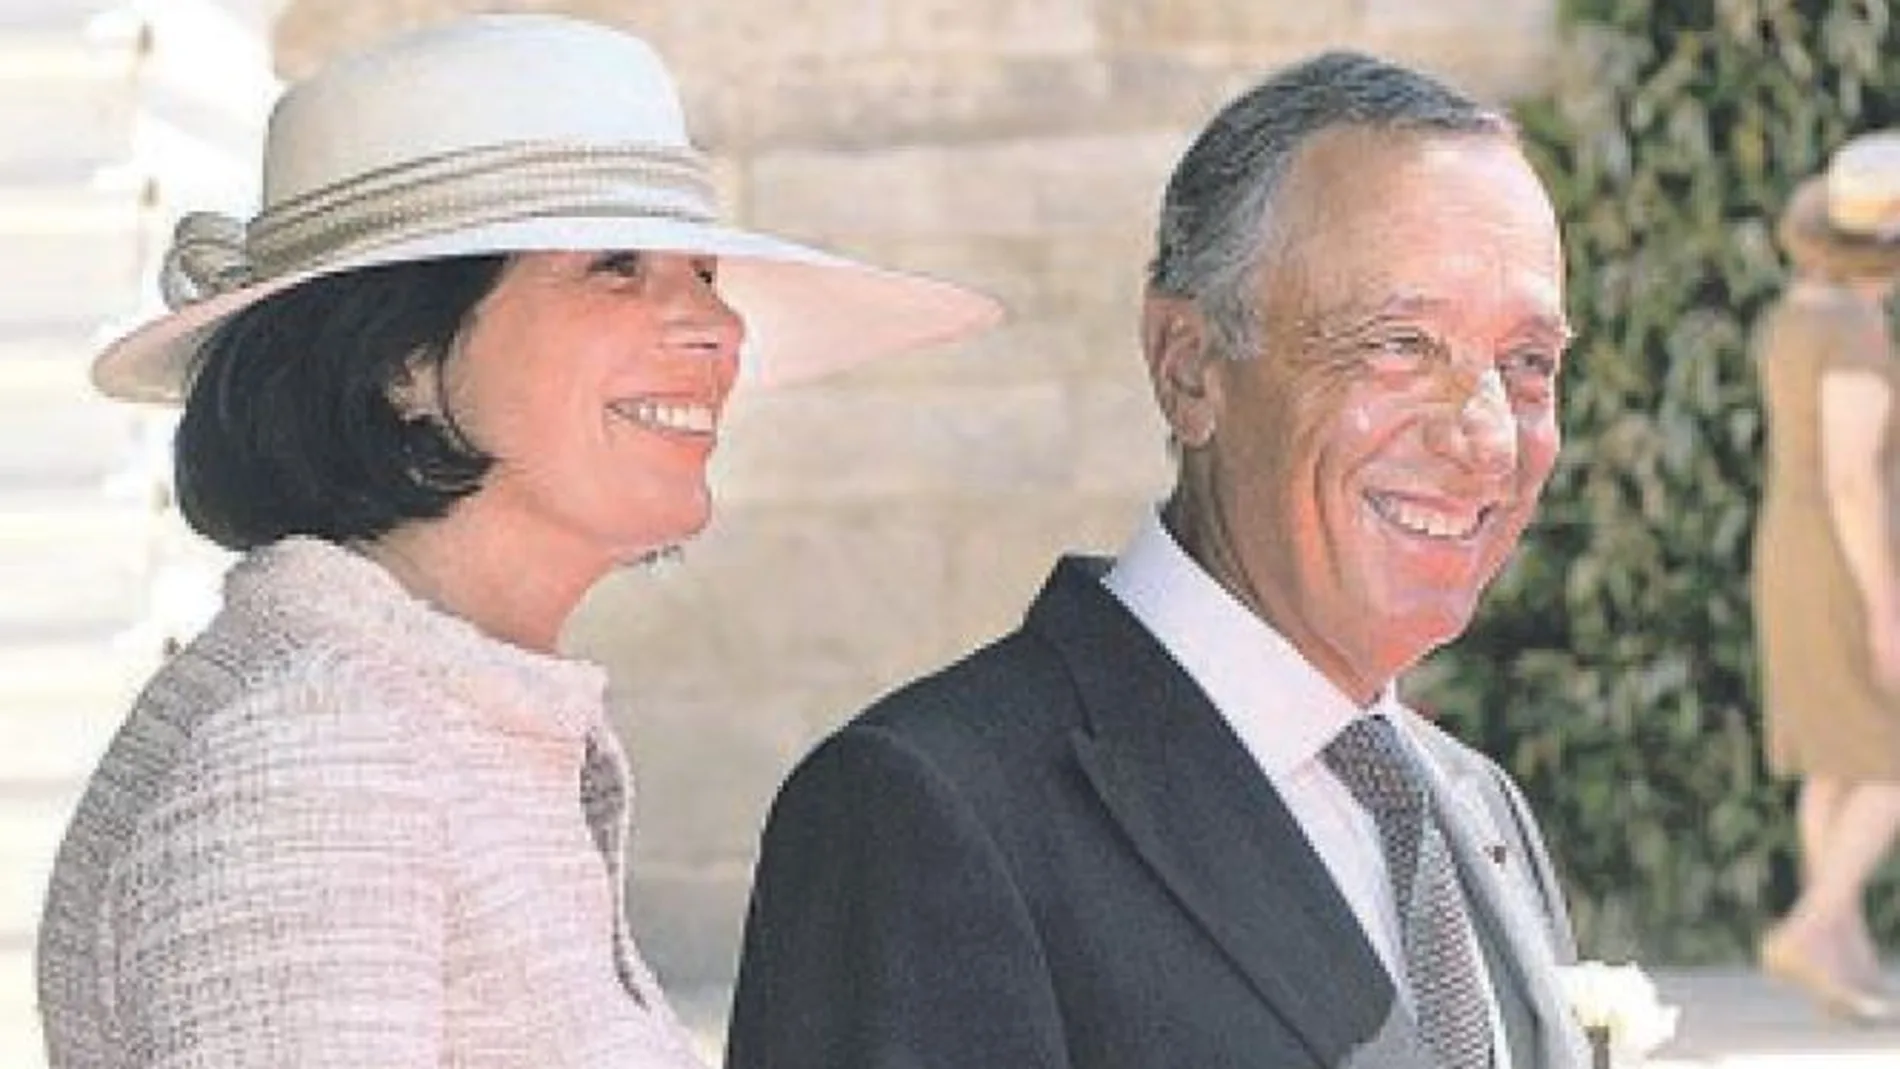 Rita Amaral Cabral y Marcelo de Sousa no asisten juntos a eventos oficiales, pero sí a bodas y reuniones familiares